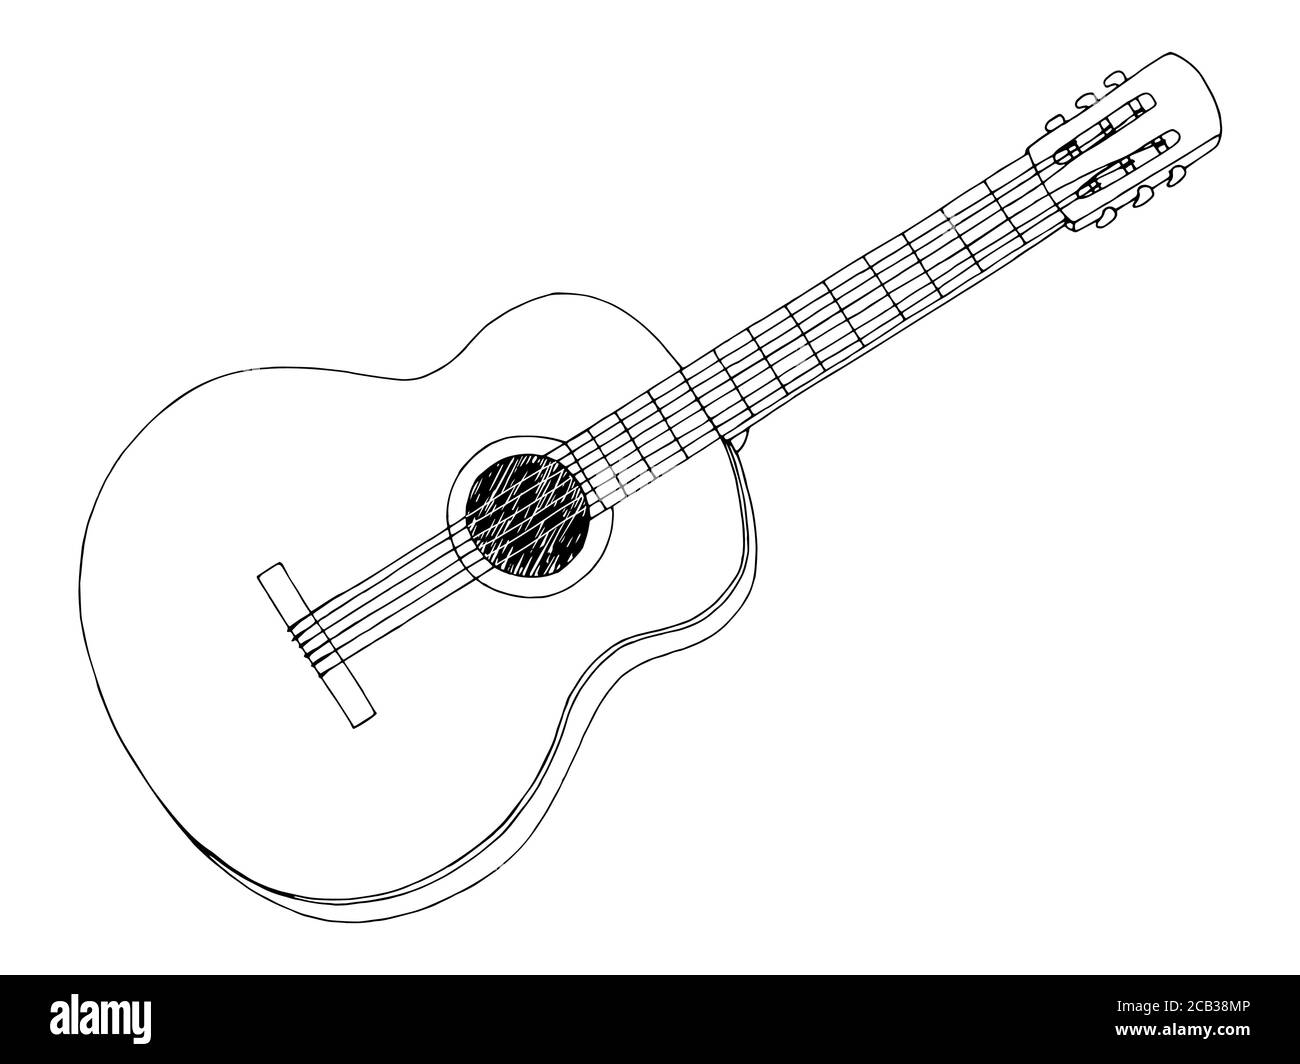 Acoustic guitar sketch Imágenes de stock en blanco y negro - Alamy